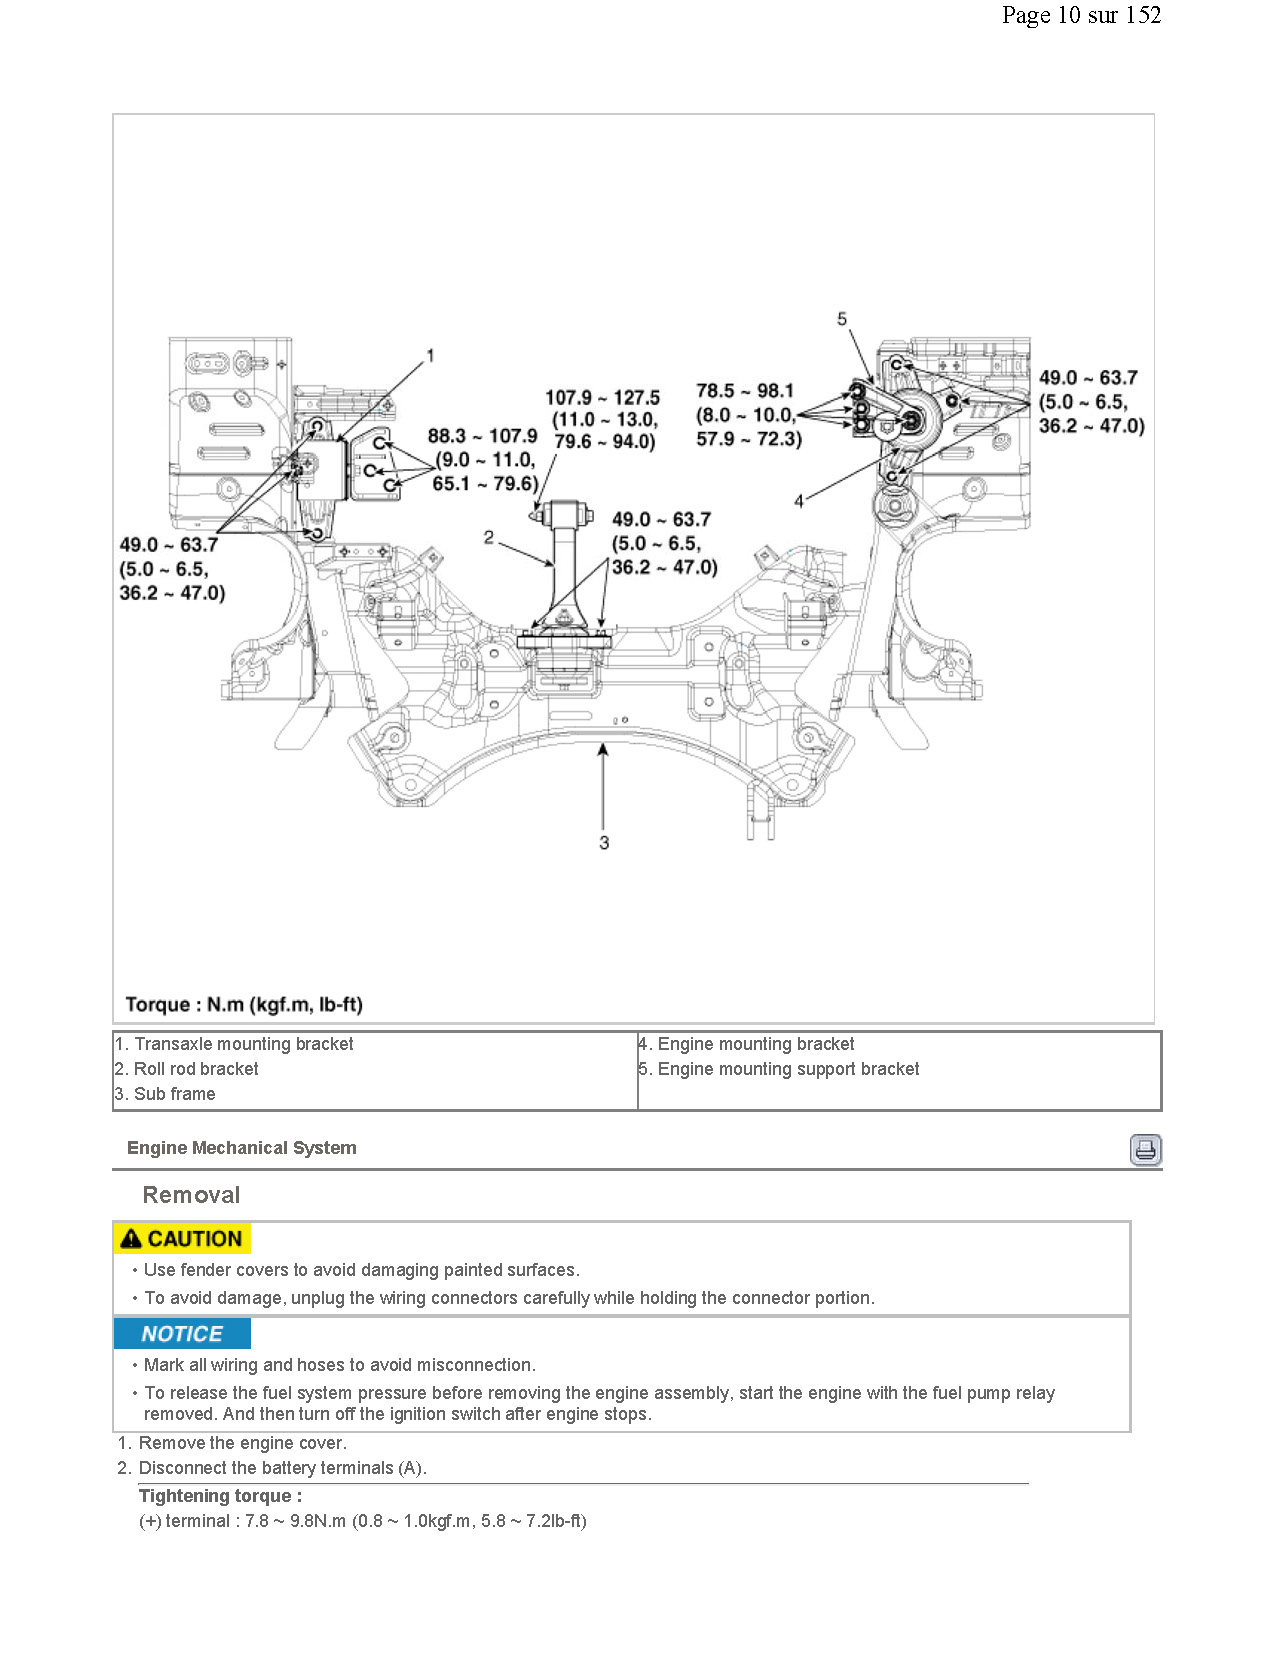 2016 Kia Sportage Repair Manual, Body Repair